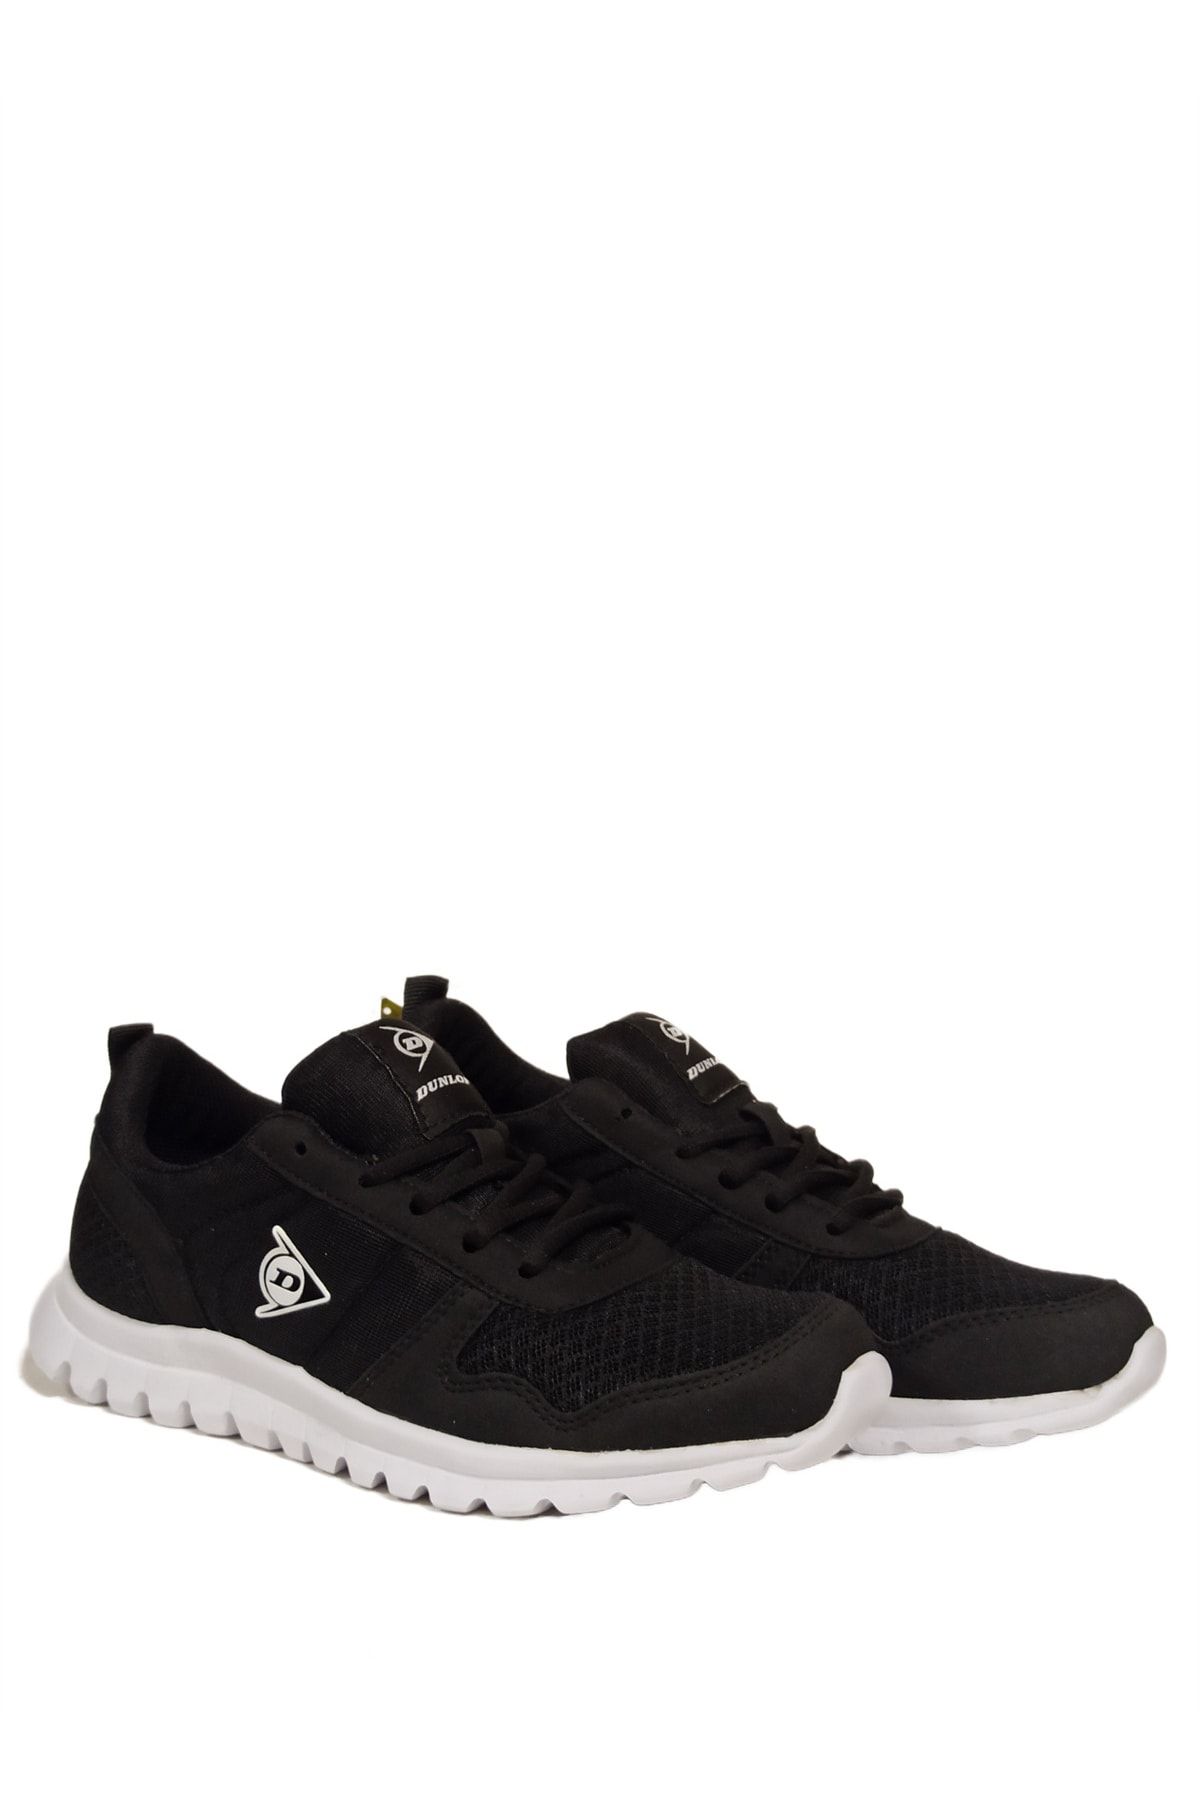 Dunlop 1188 Kadın Siyah Beyaz Sneaker Günlük Spor Ayakkabı